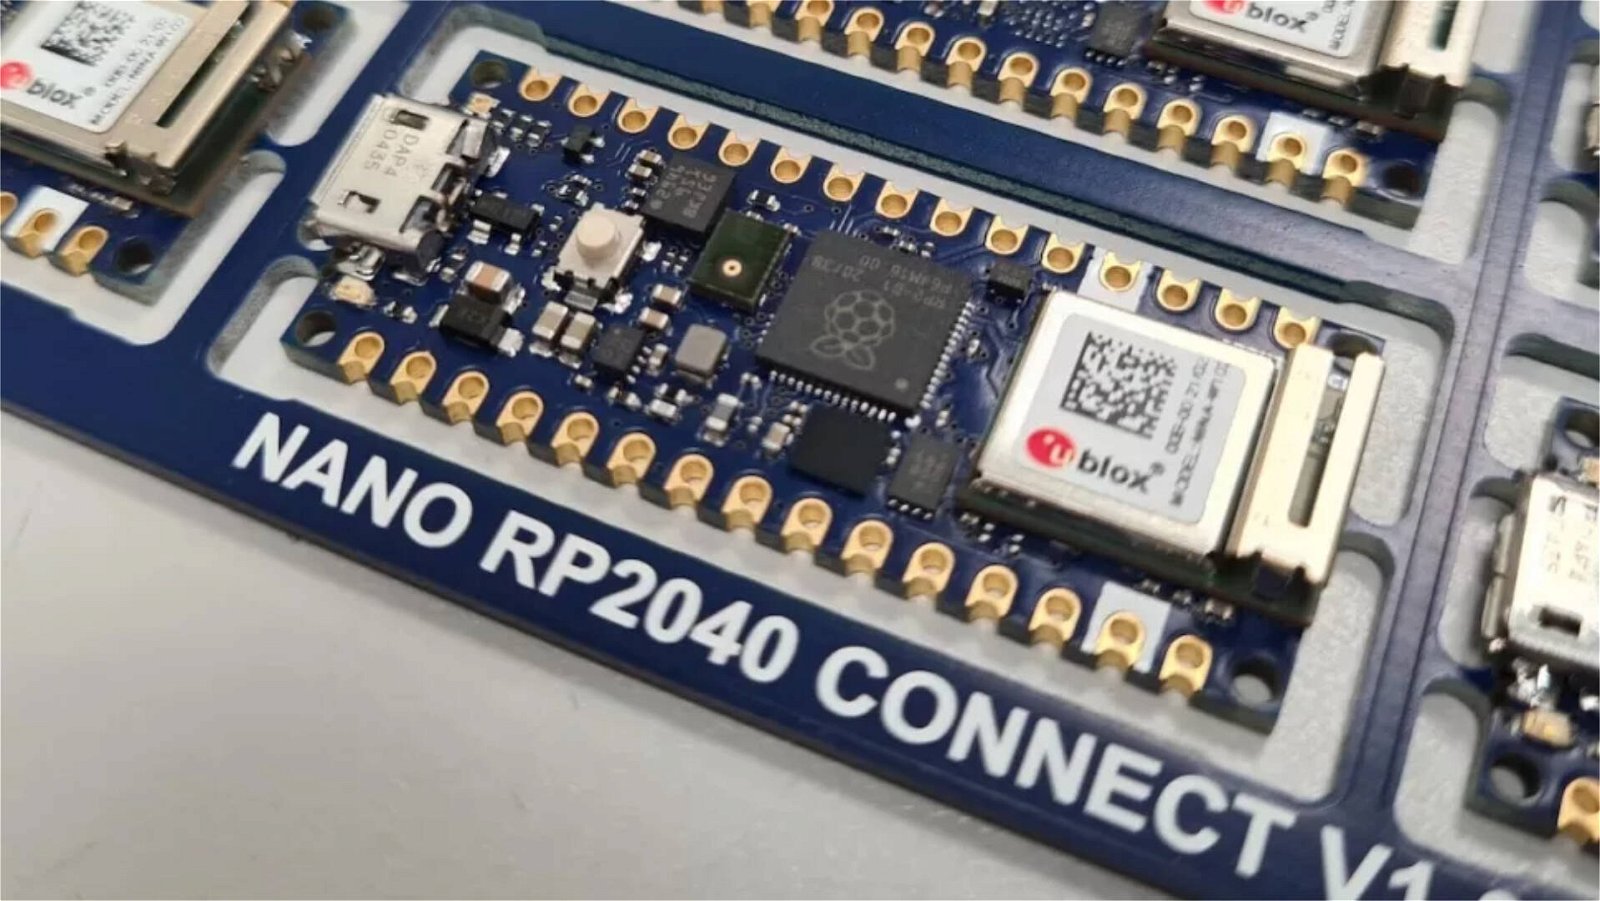 Immagine di Arduino Nano RP2040 Connect diventa ancora più versatile con questo accessorio